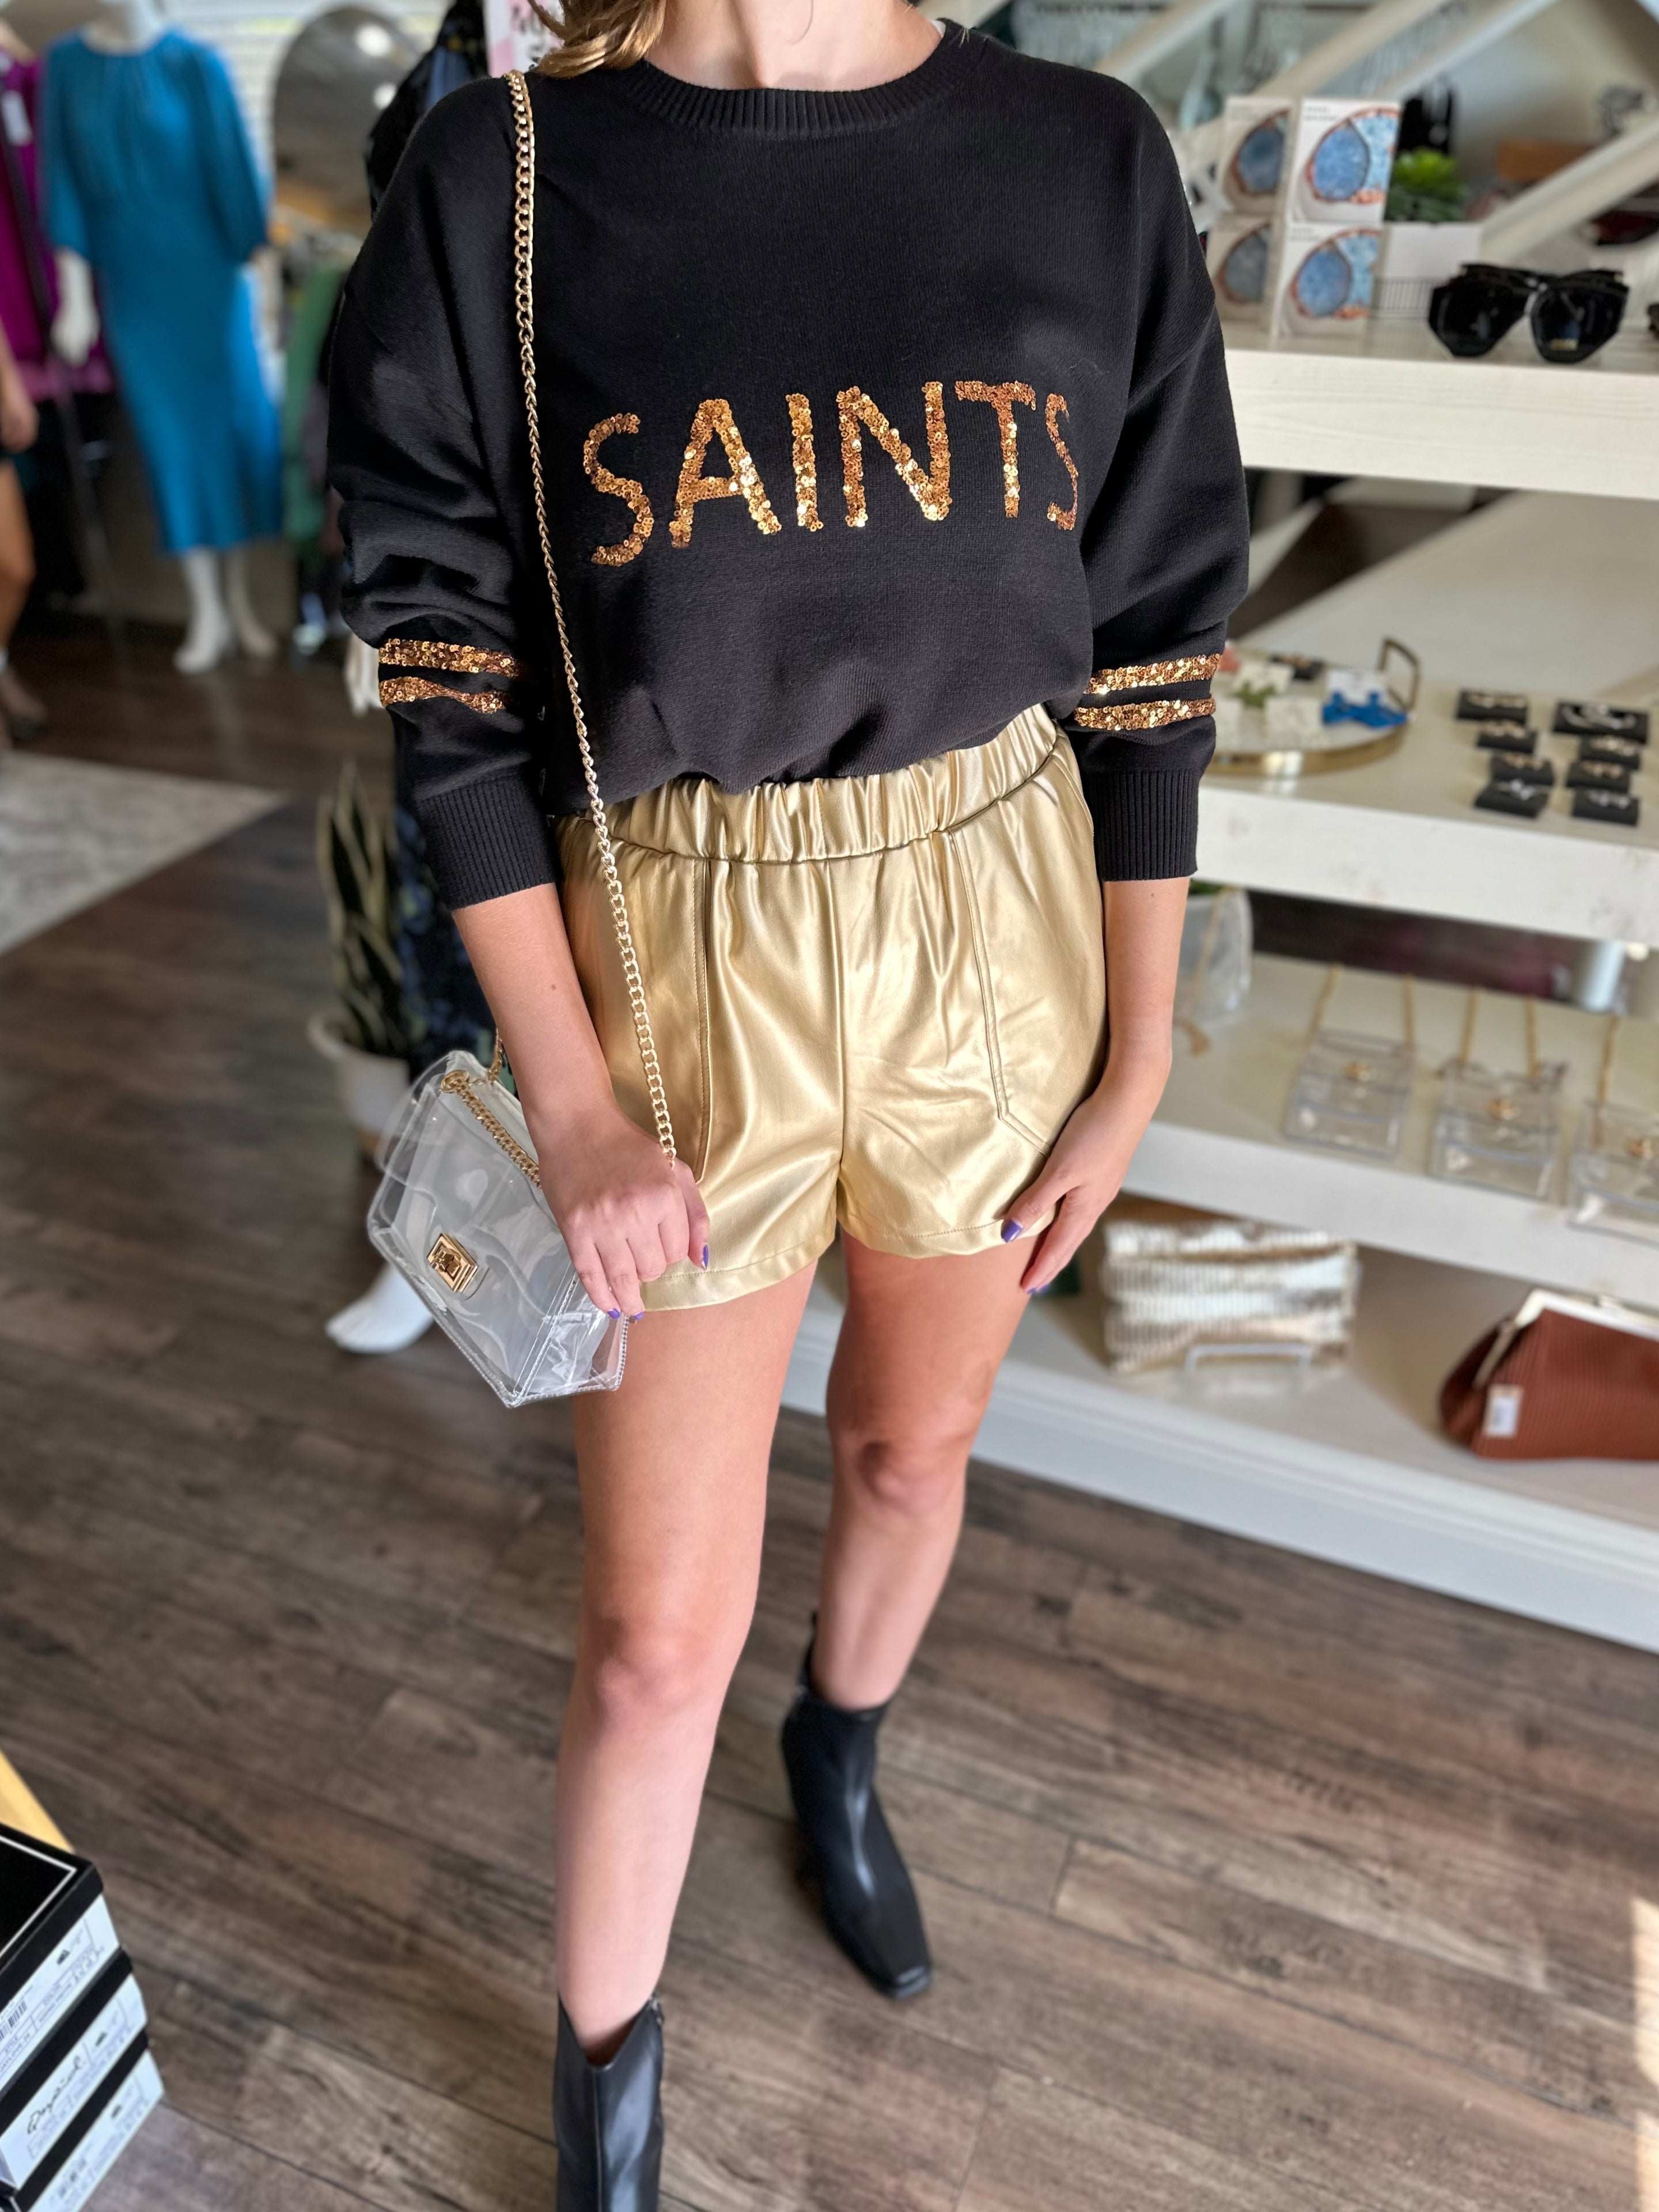 Sequin Saints Knit Top